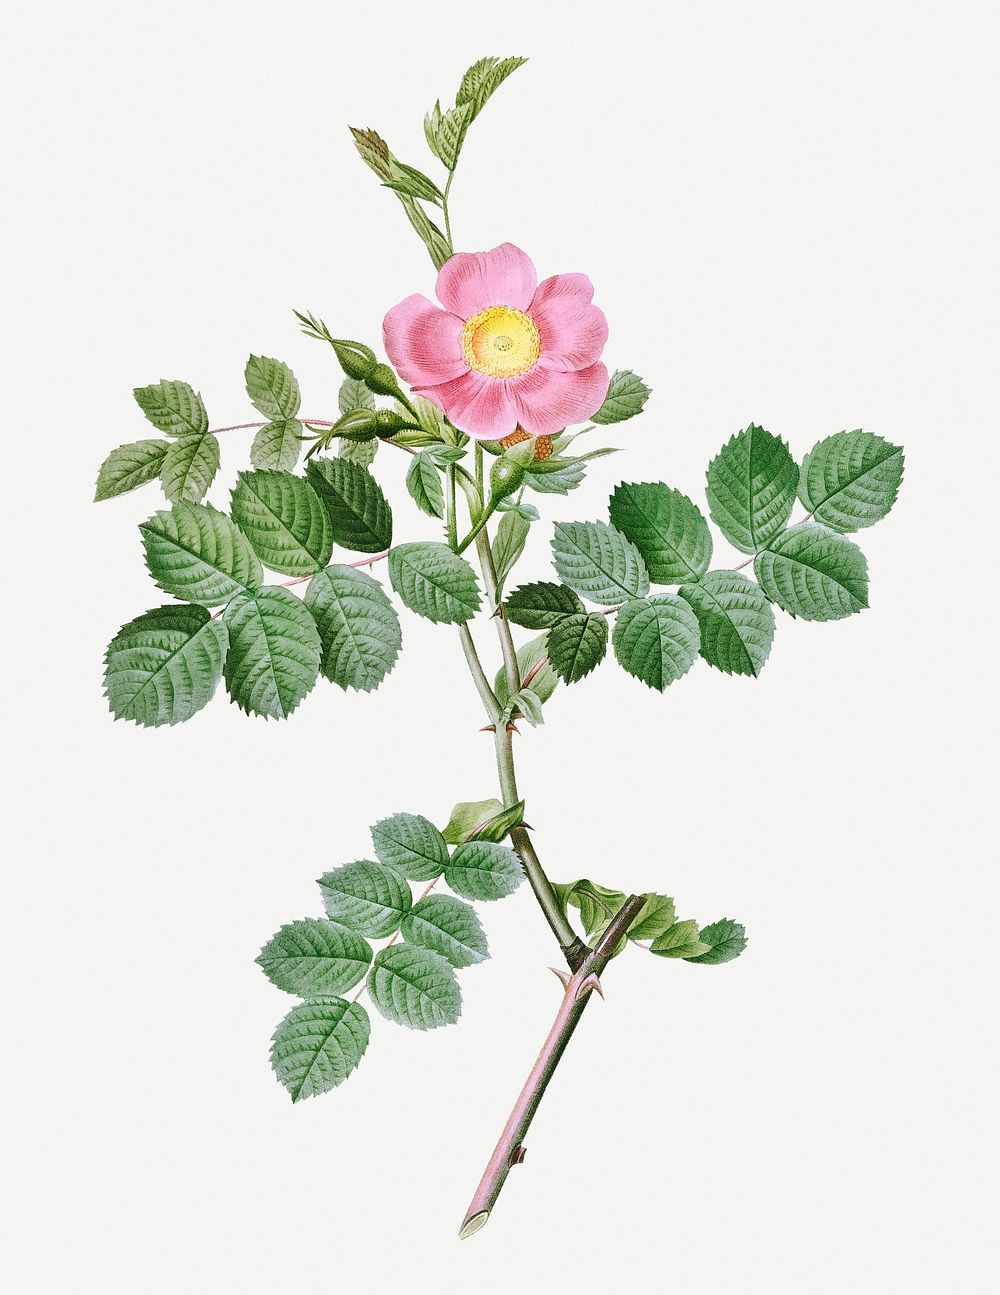 Vintage blooming sweet-brier rosebush illustration